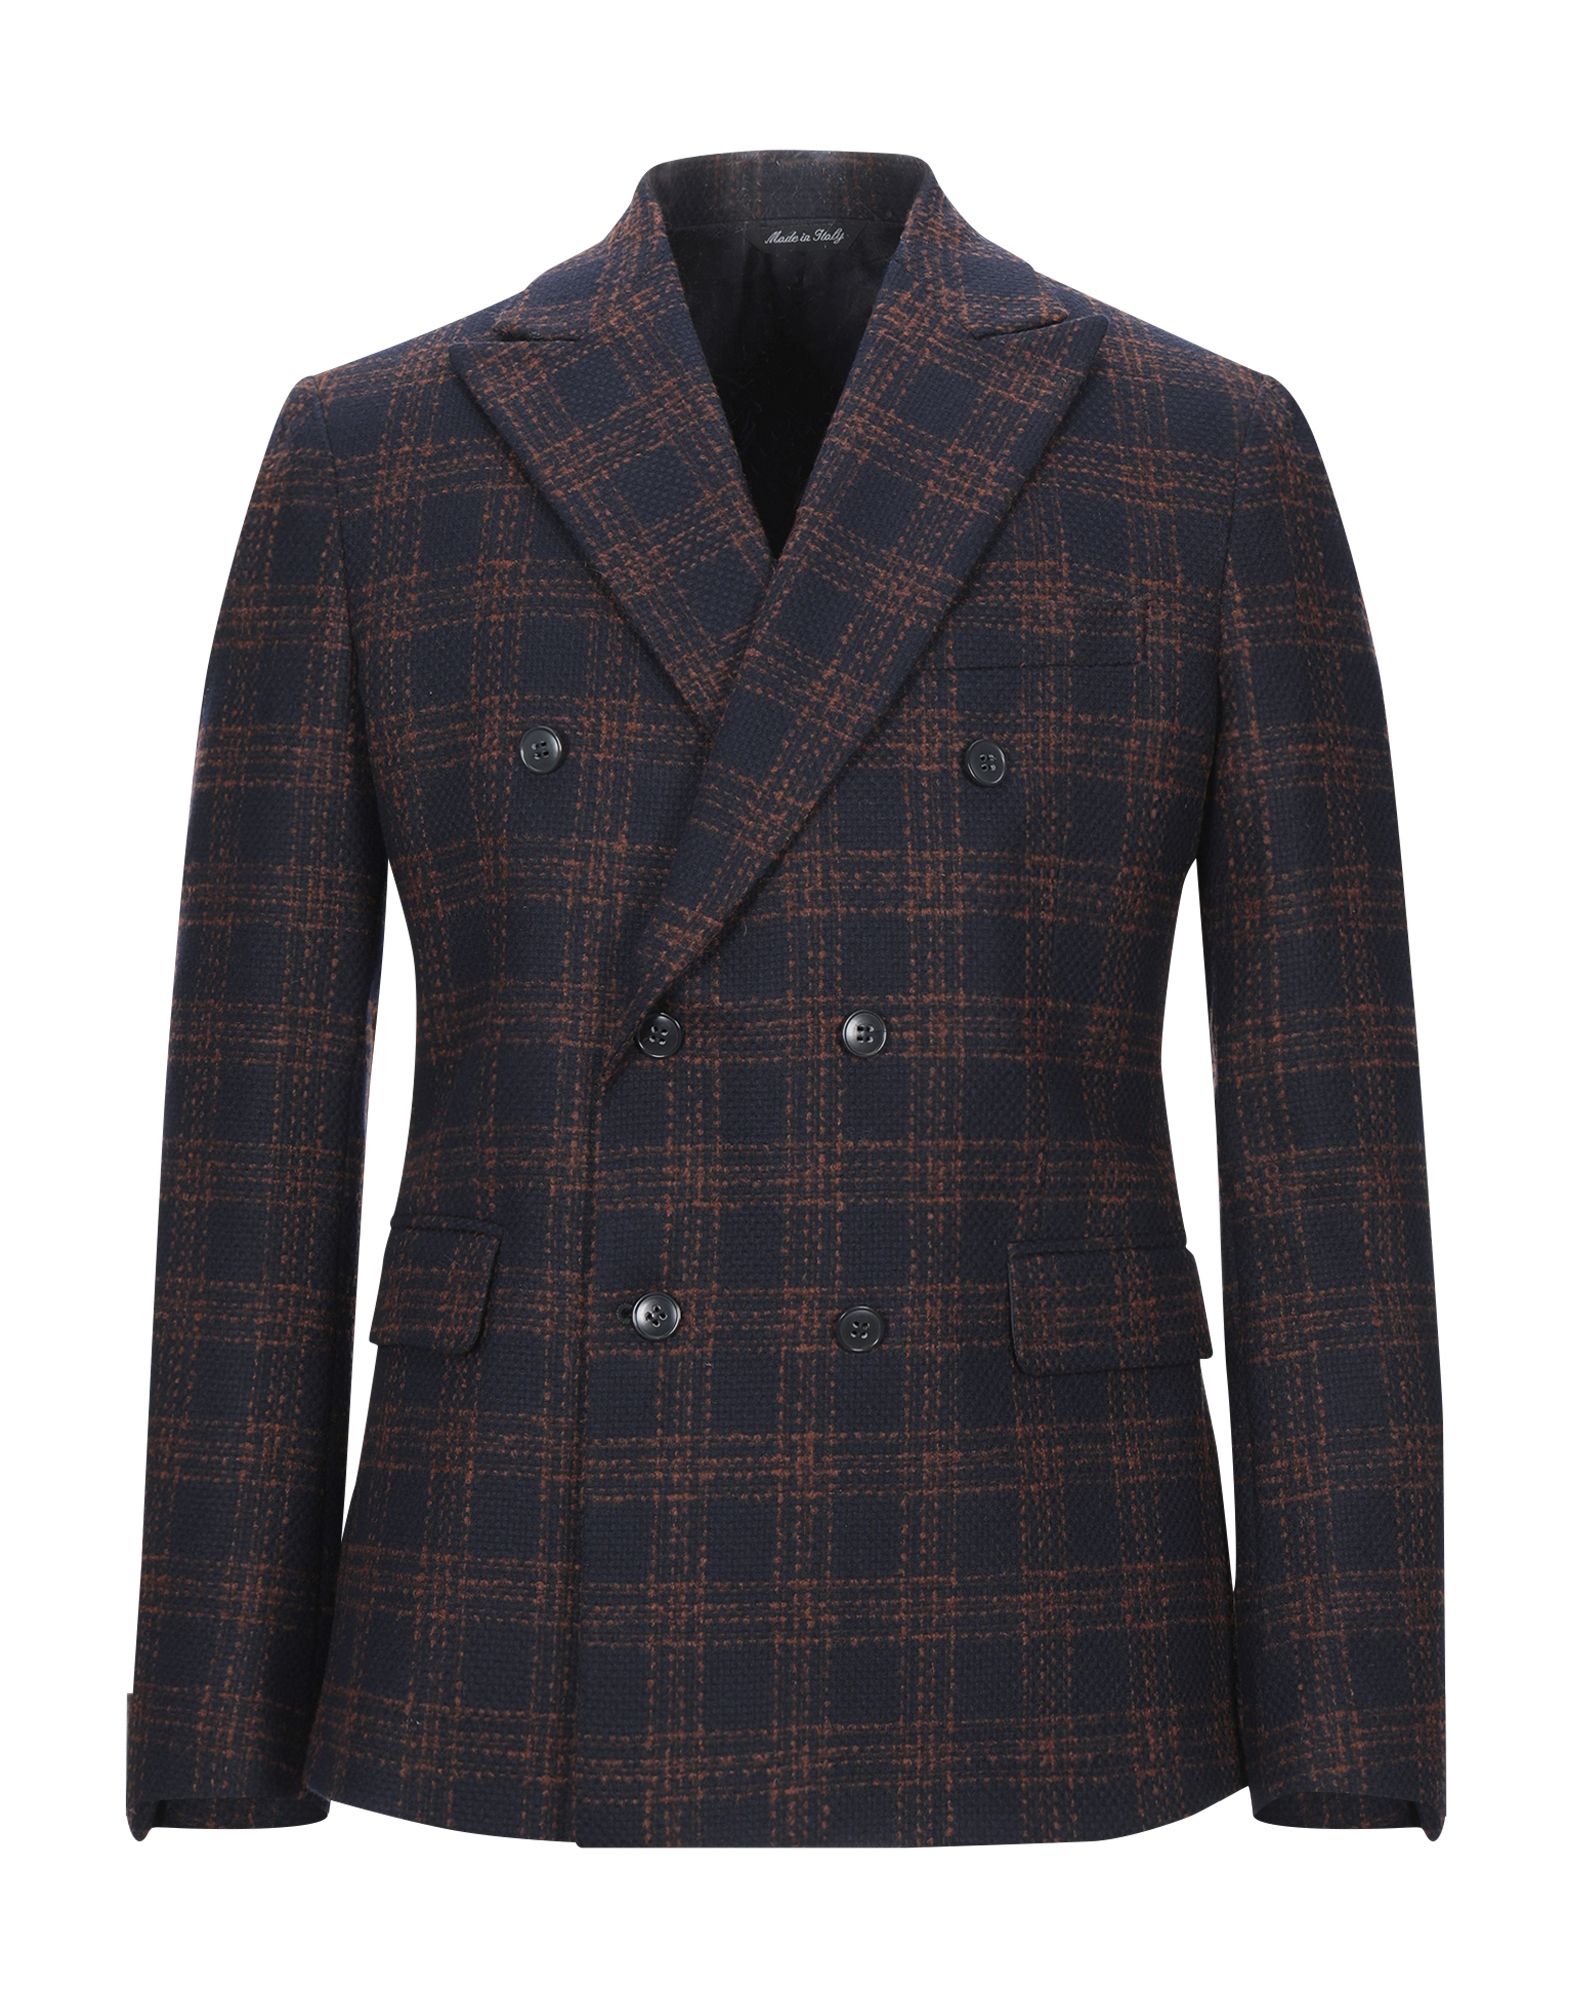 BRIAN DALES Suit jackets - Item 49573385